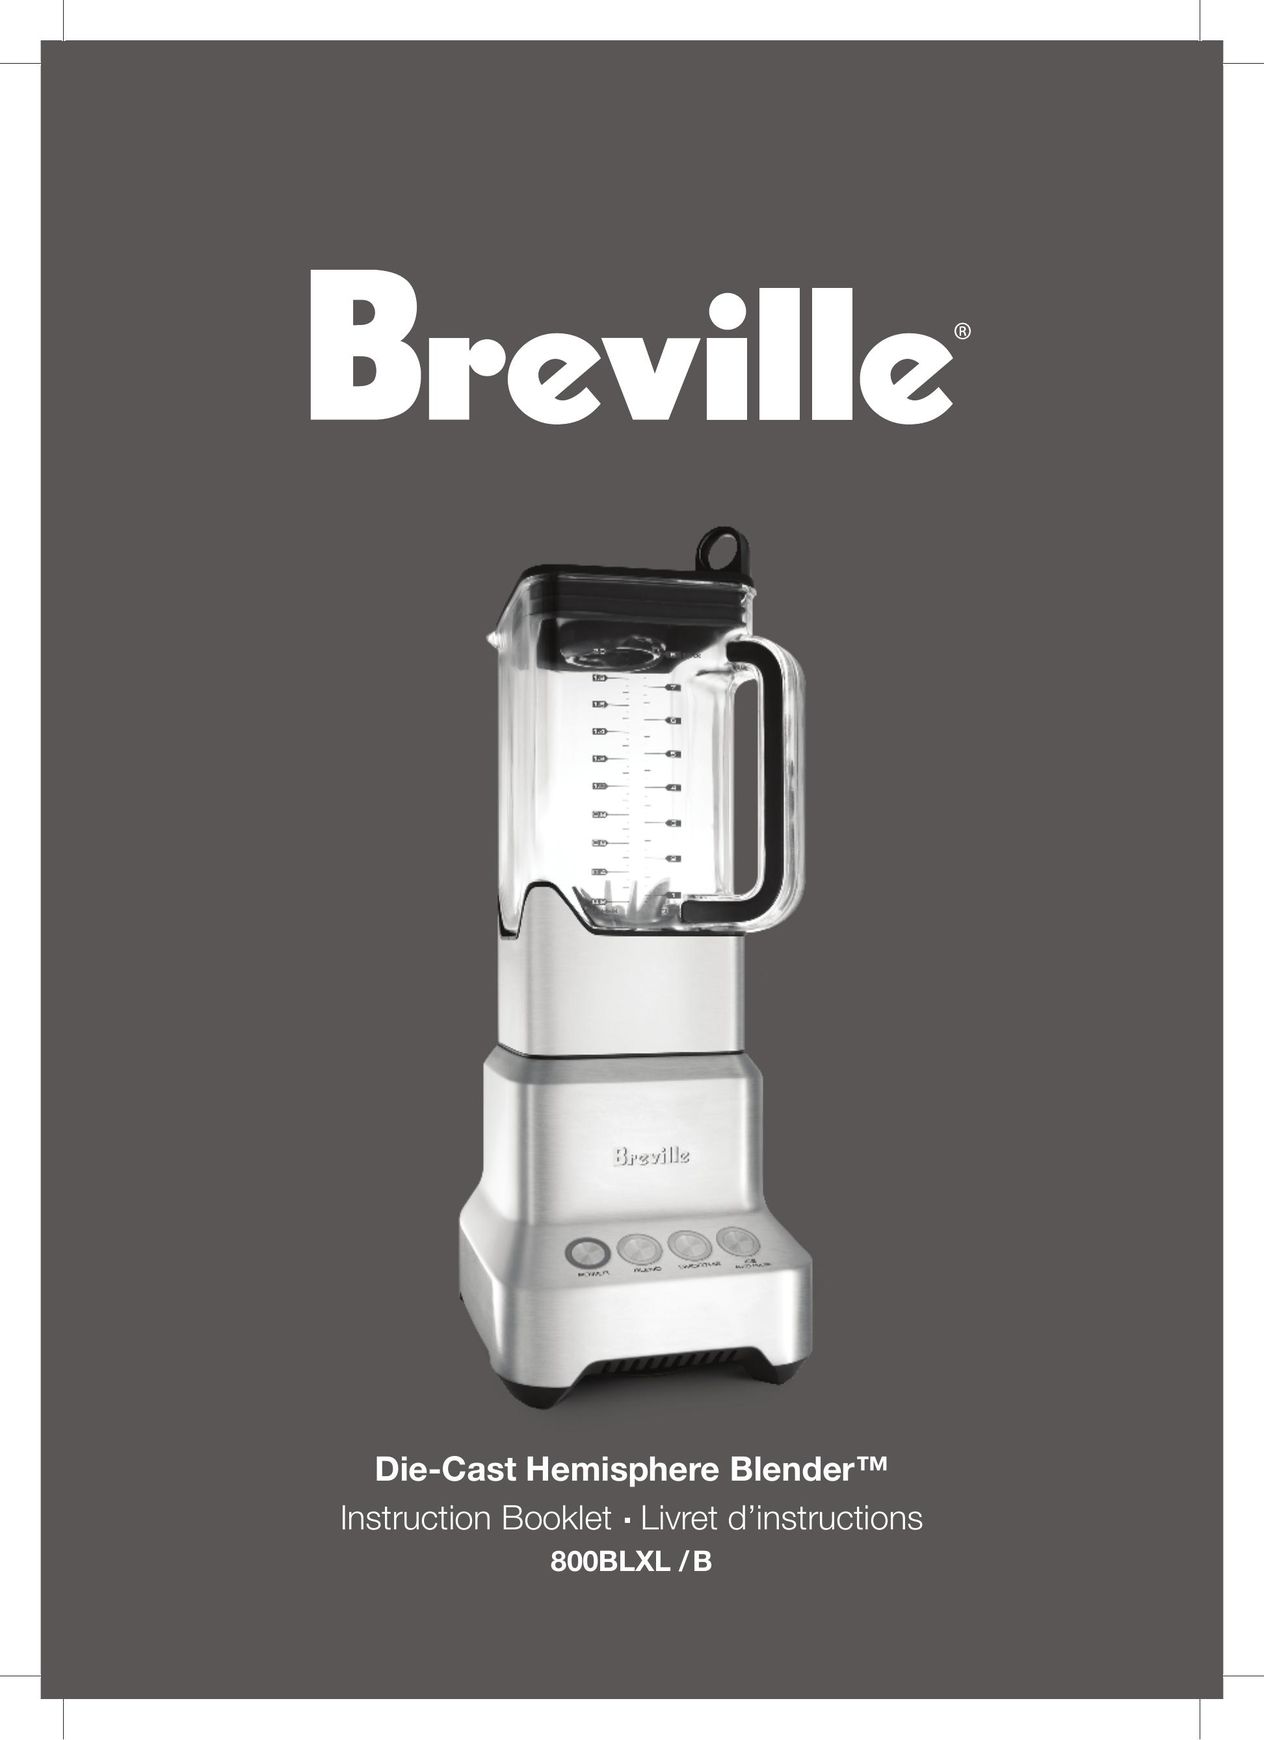 Breville 800BLXL /B Blender User Manual